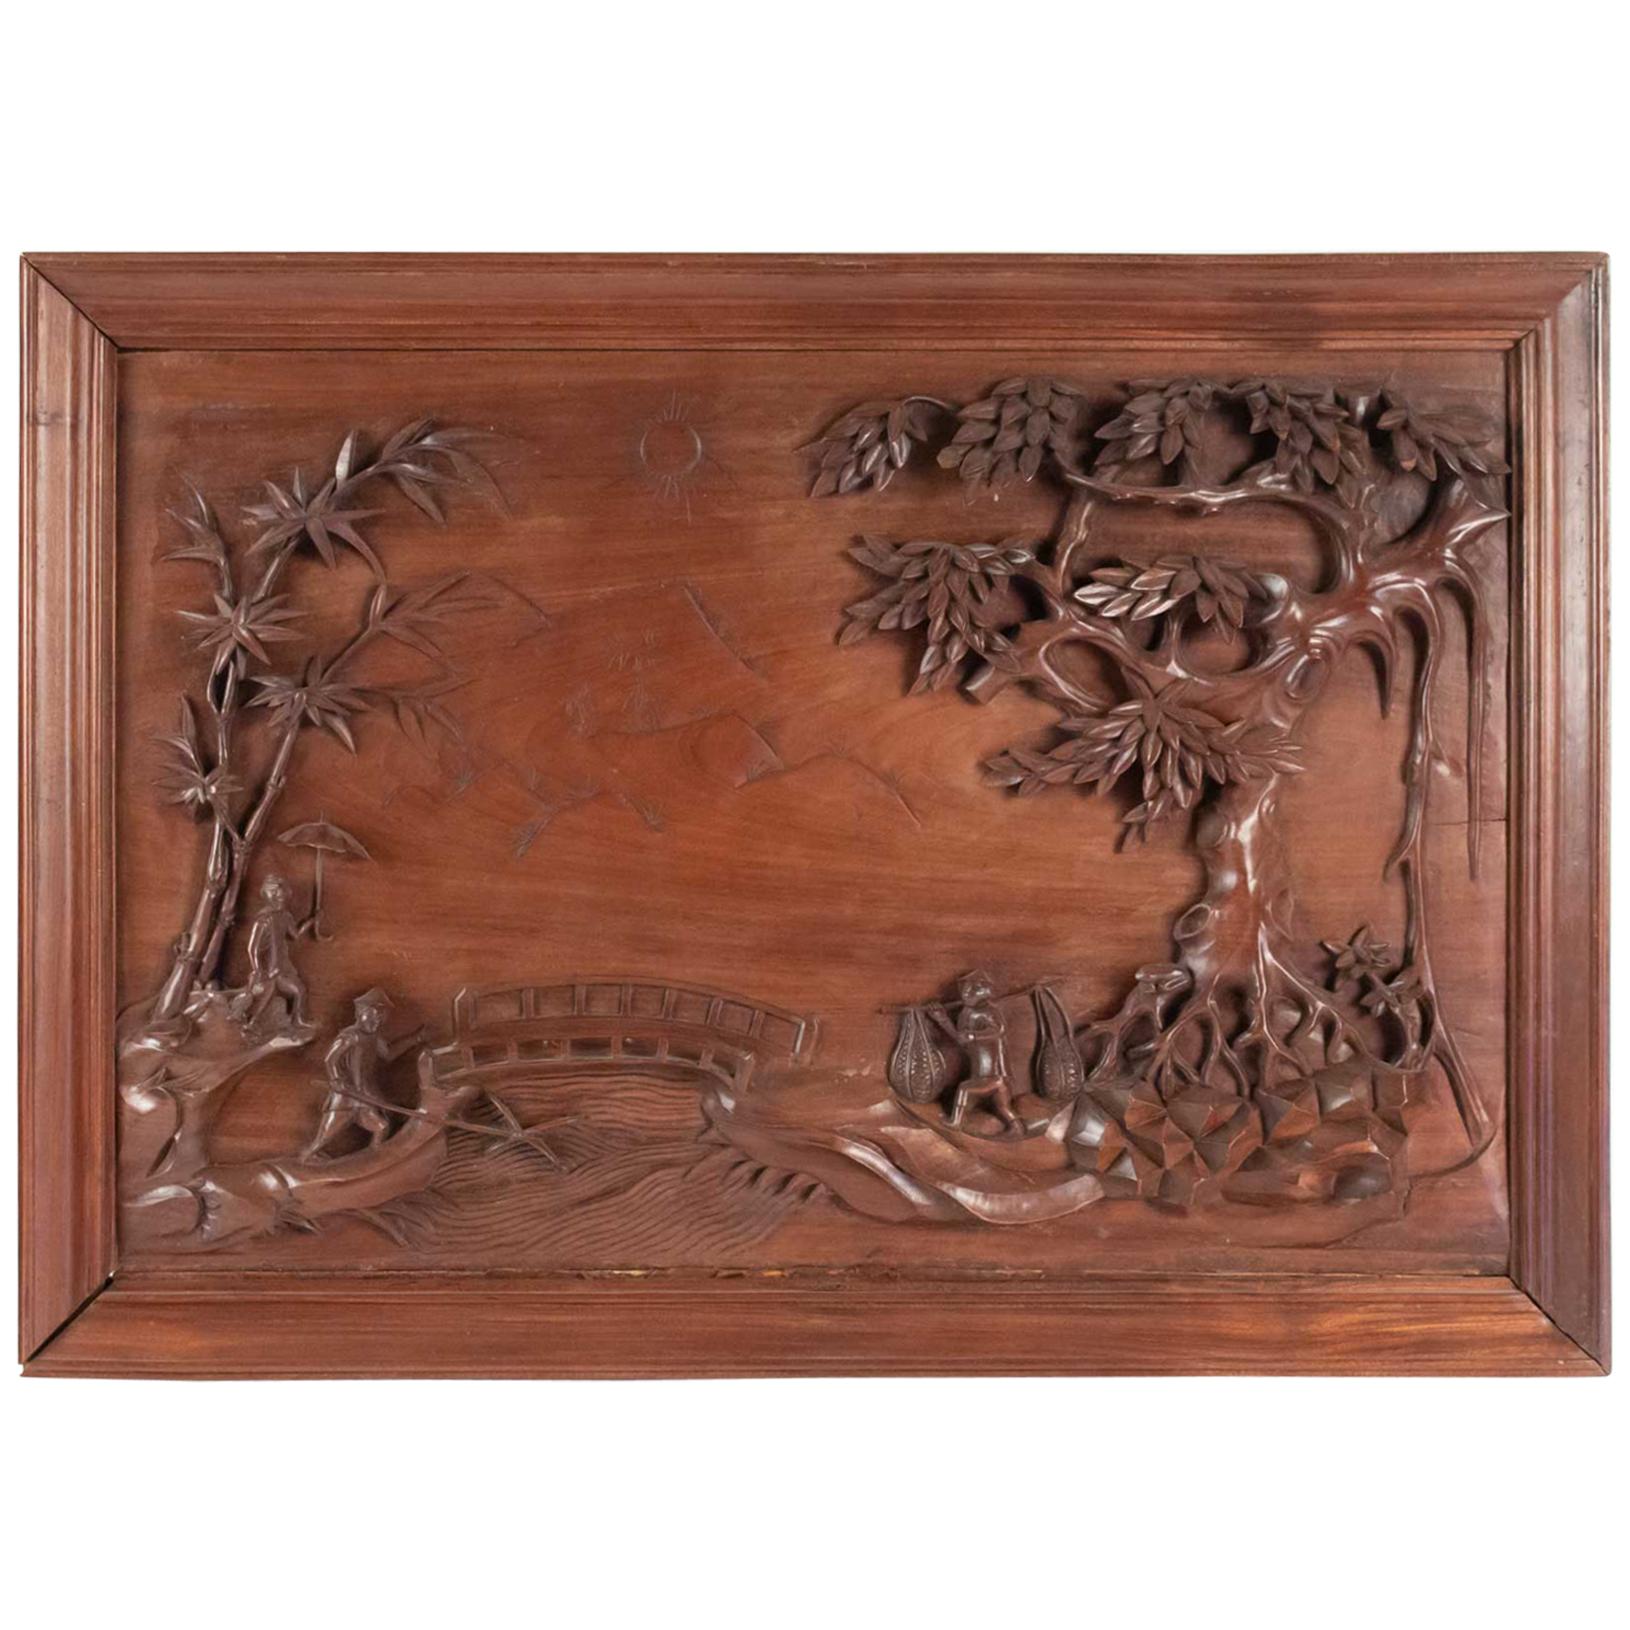 Geschnitzte Holztafel, China, 20. Jahrhundert, Inneneinrichtung